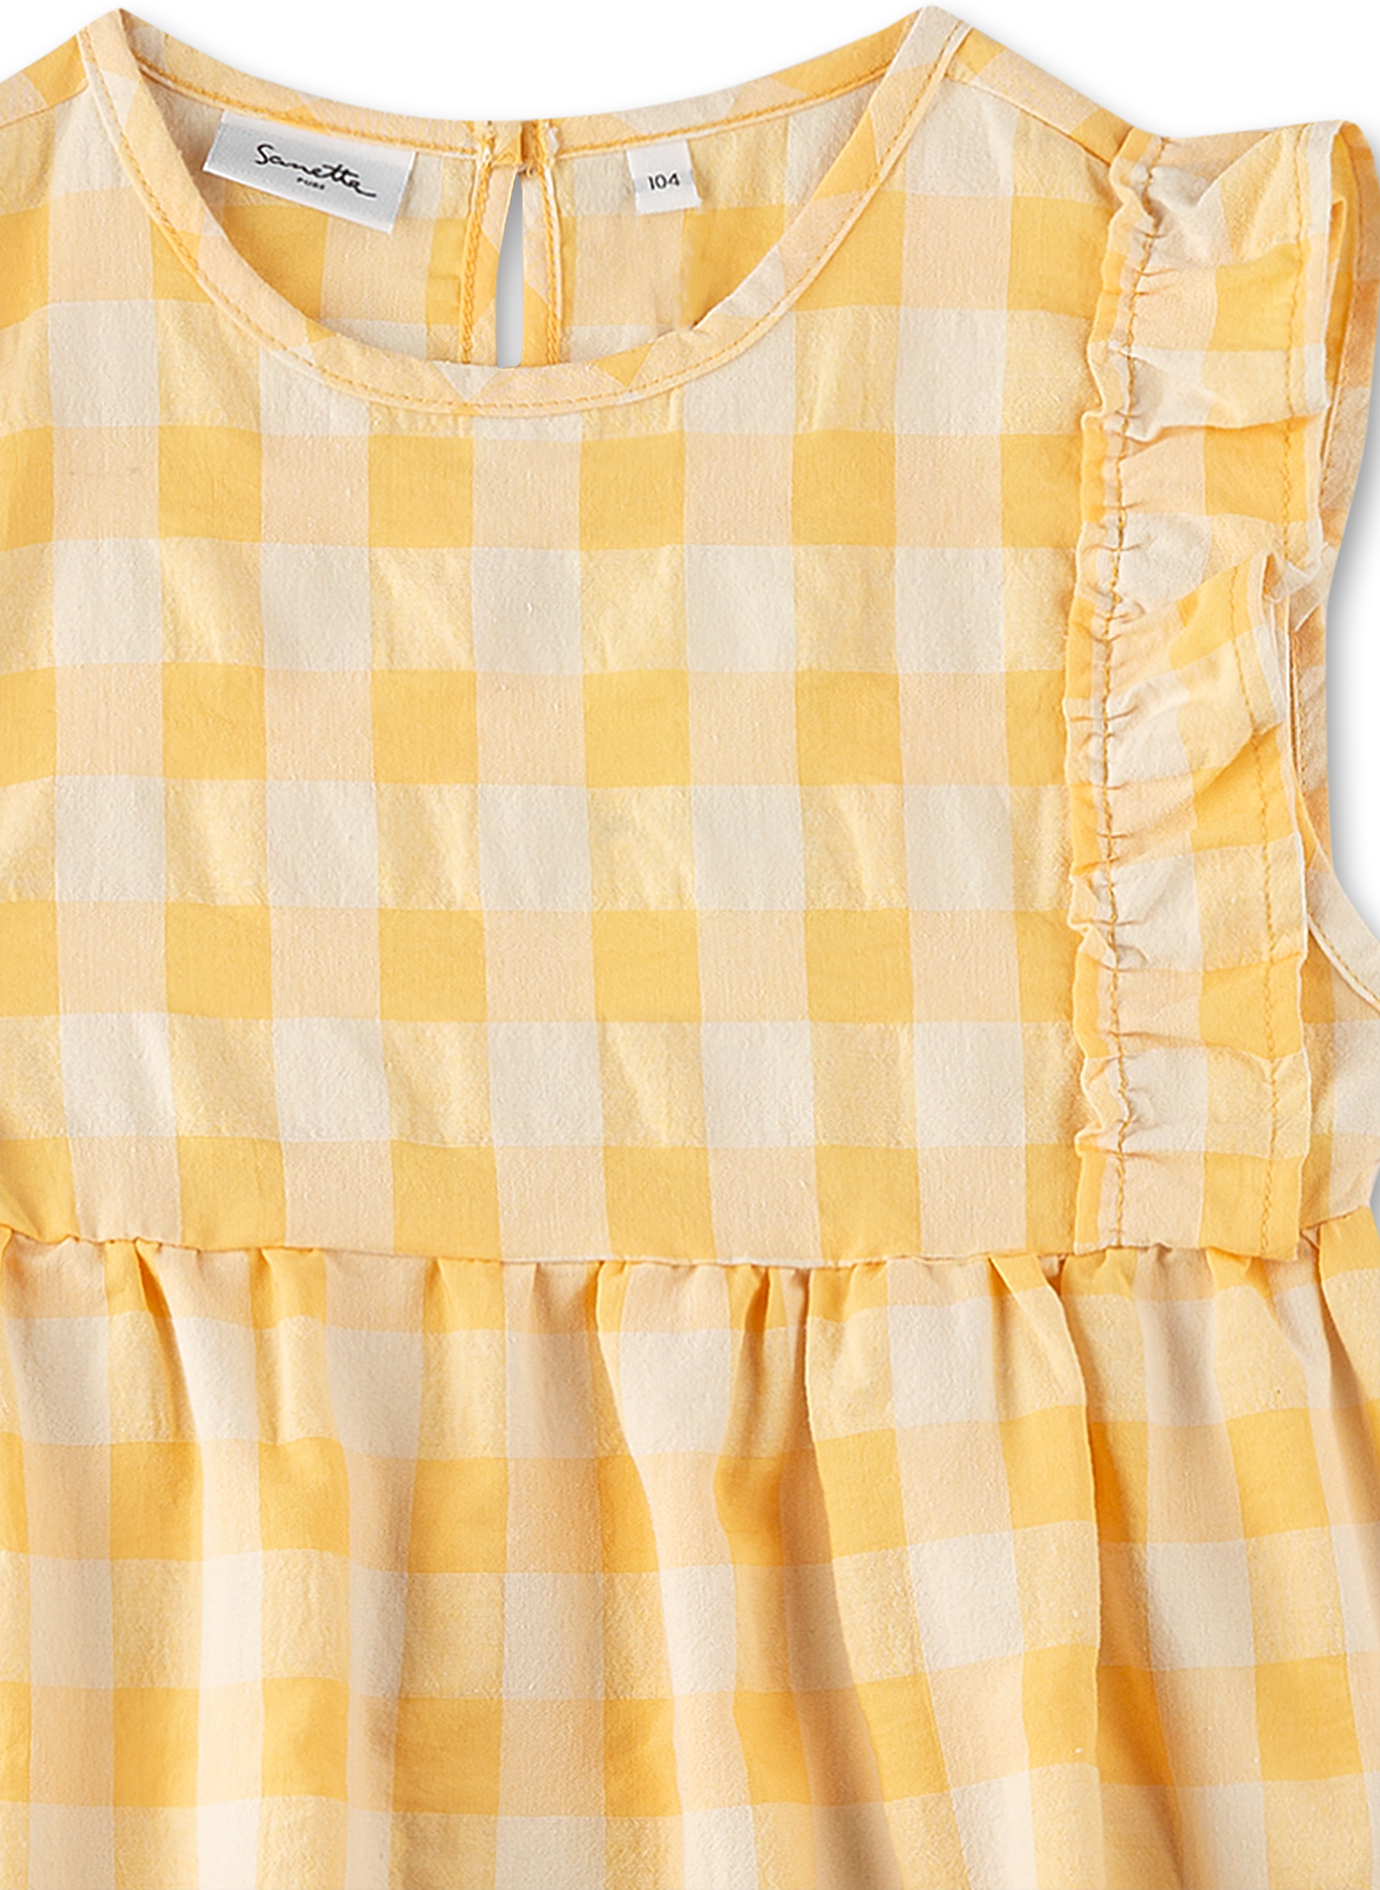 Mädchen-Kleid Gelb 